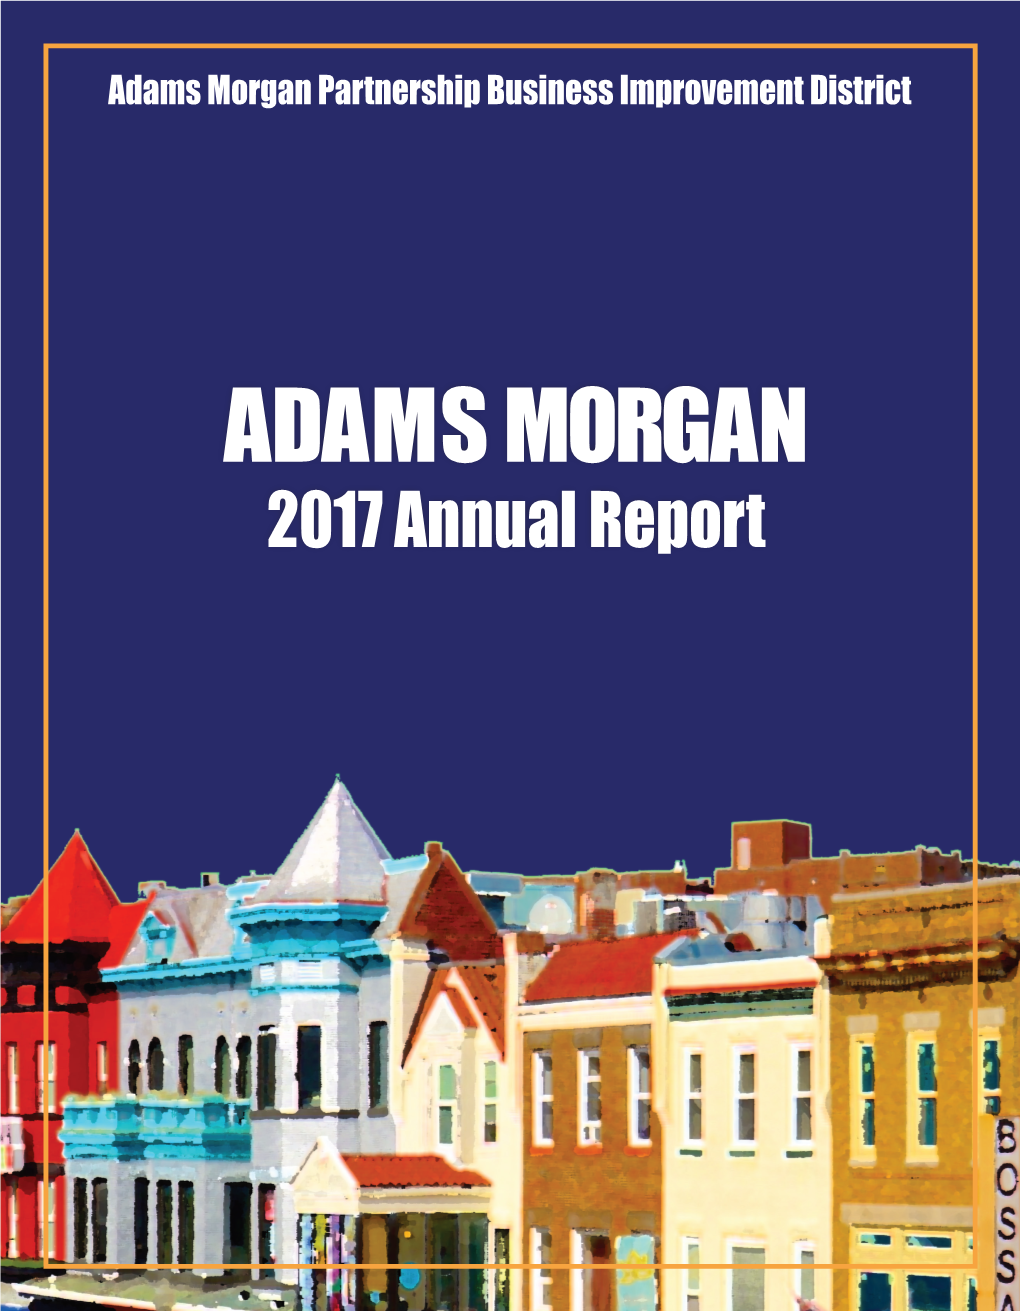 Annual Report ADAMS MORGAN PARTNERSHIP BID